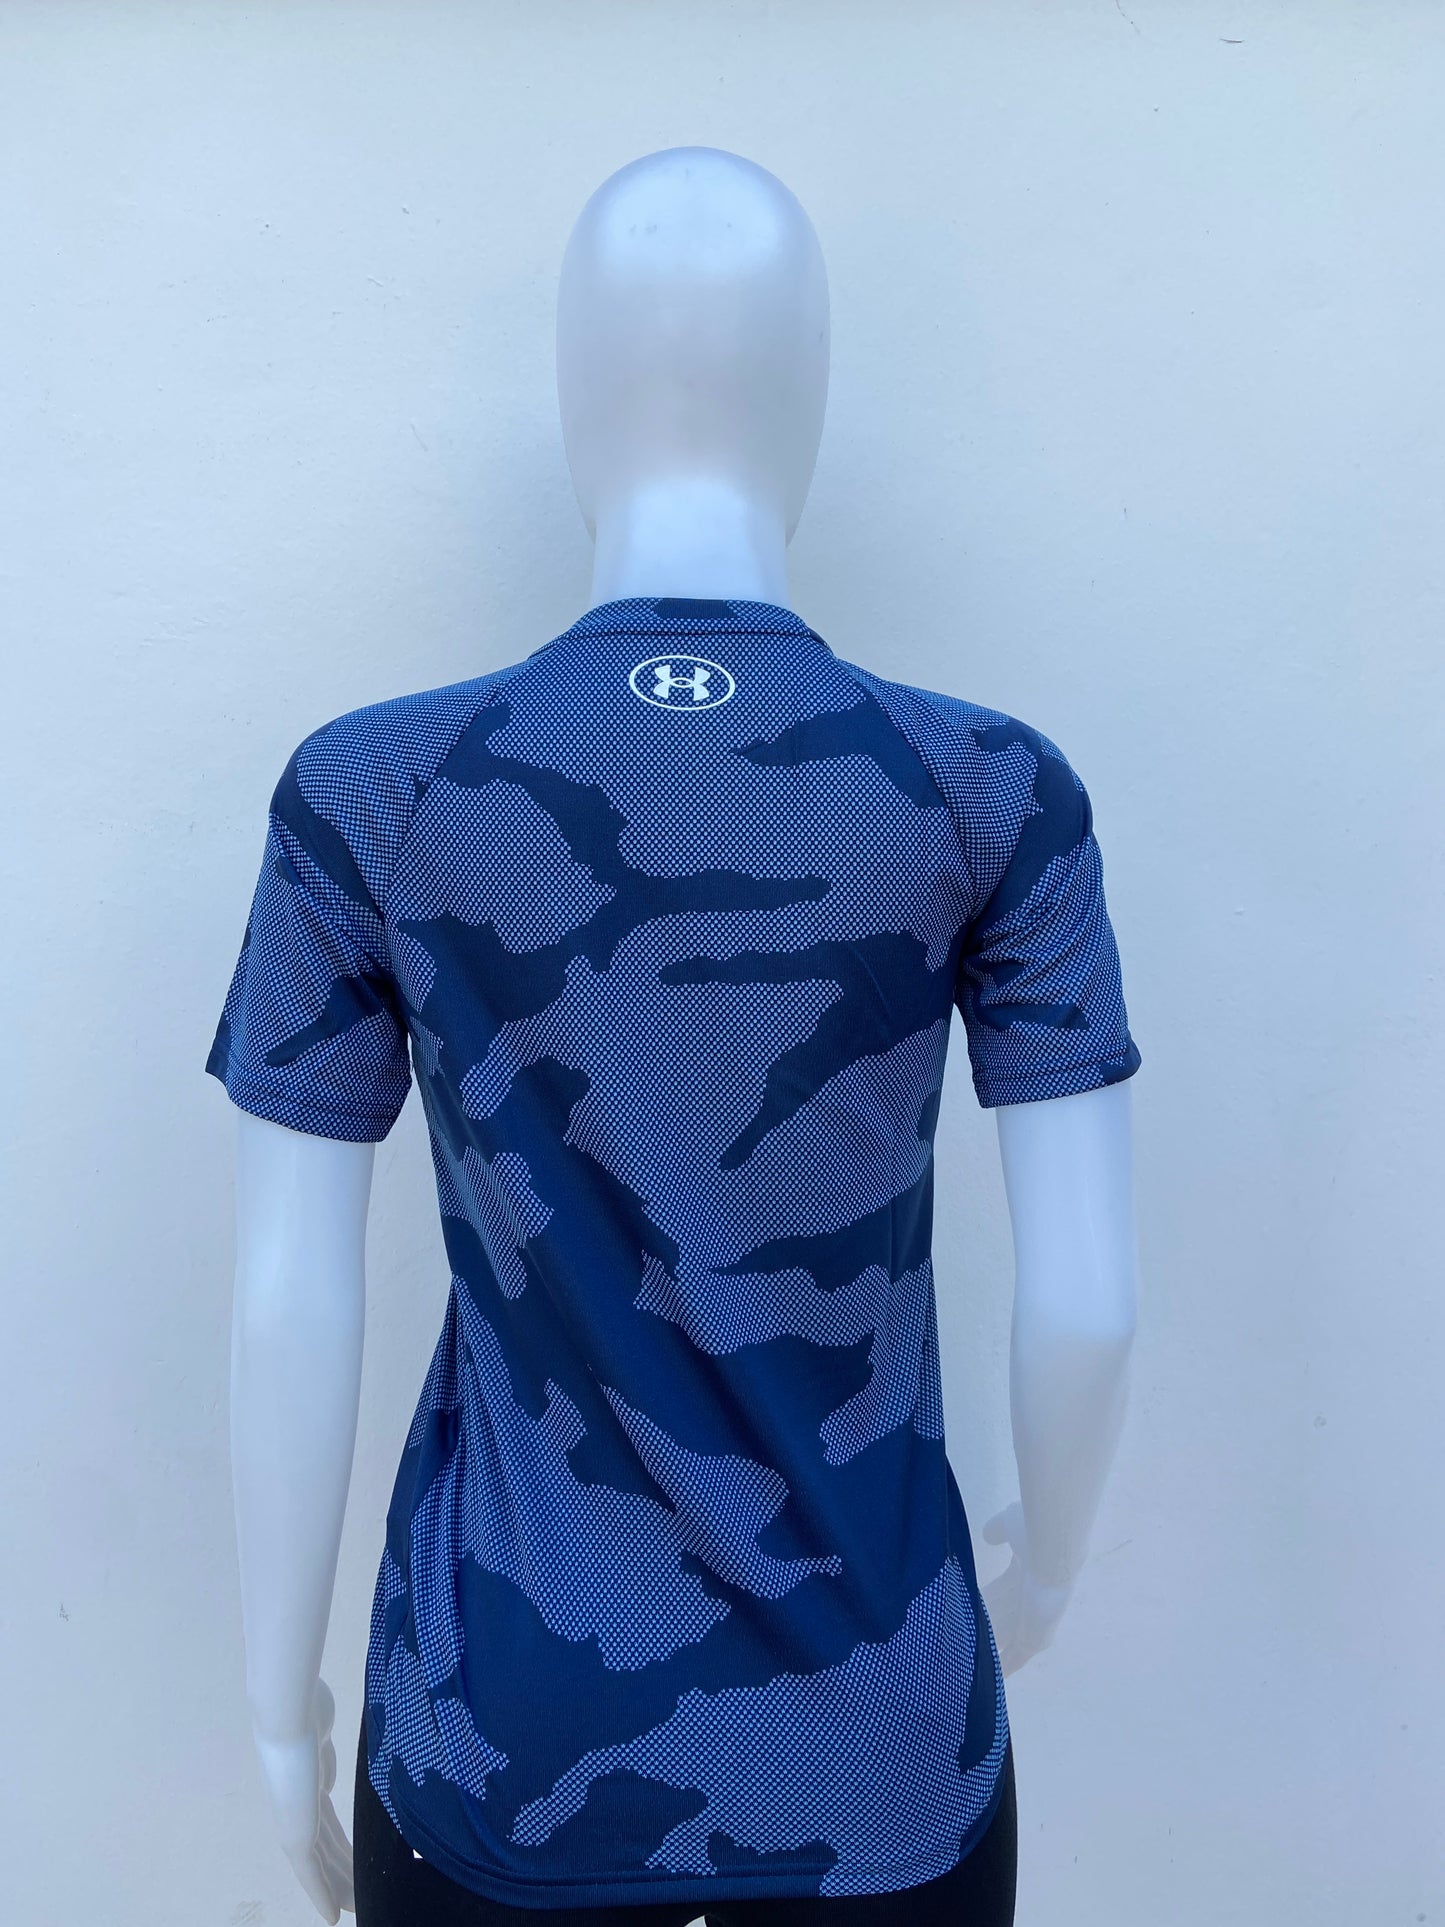 T-shirt Under Armour original azul marino con estampado militar.